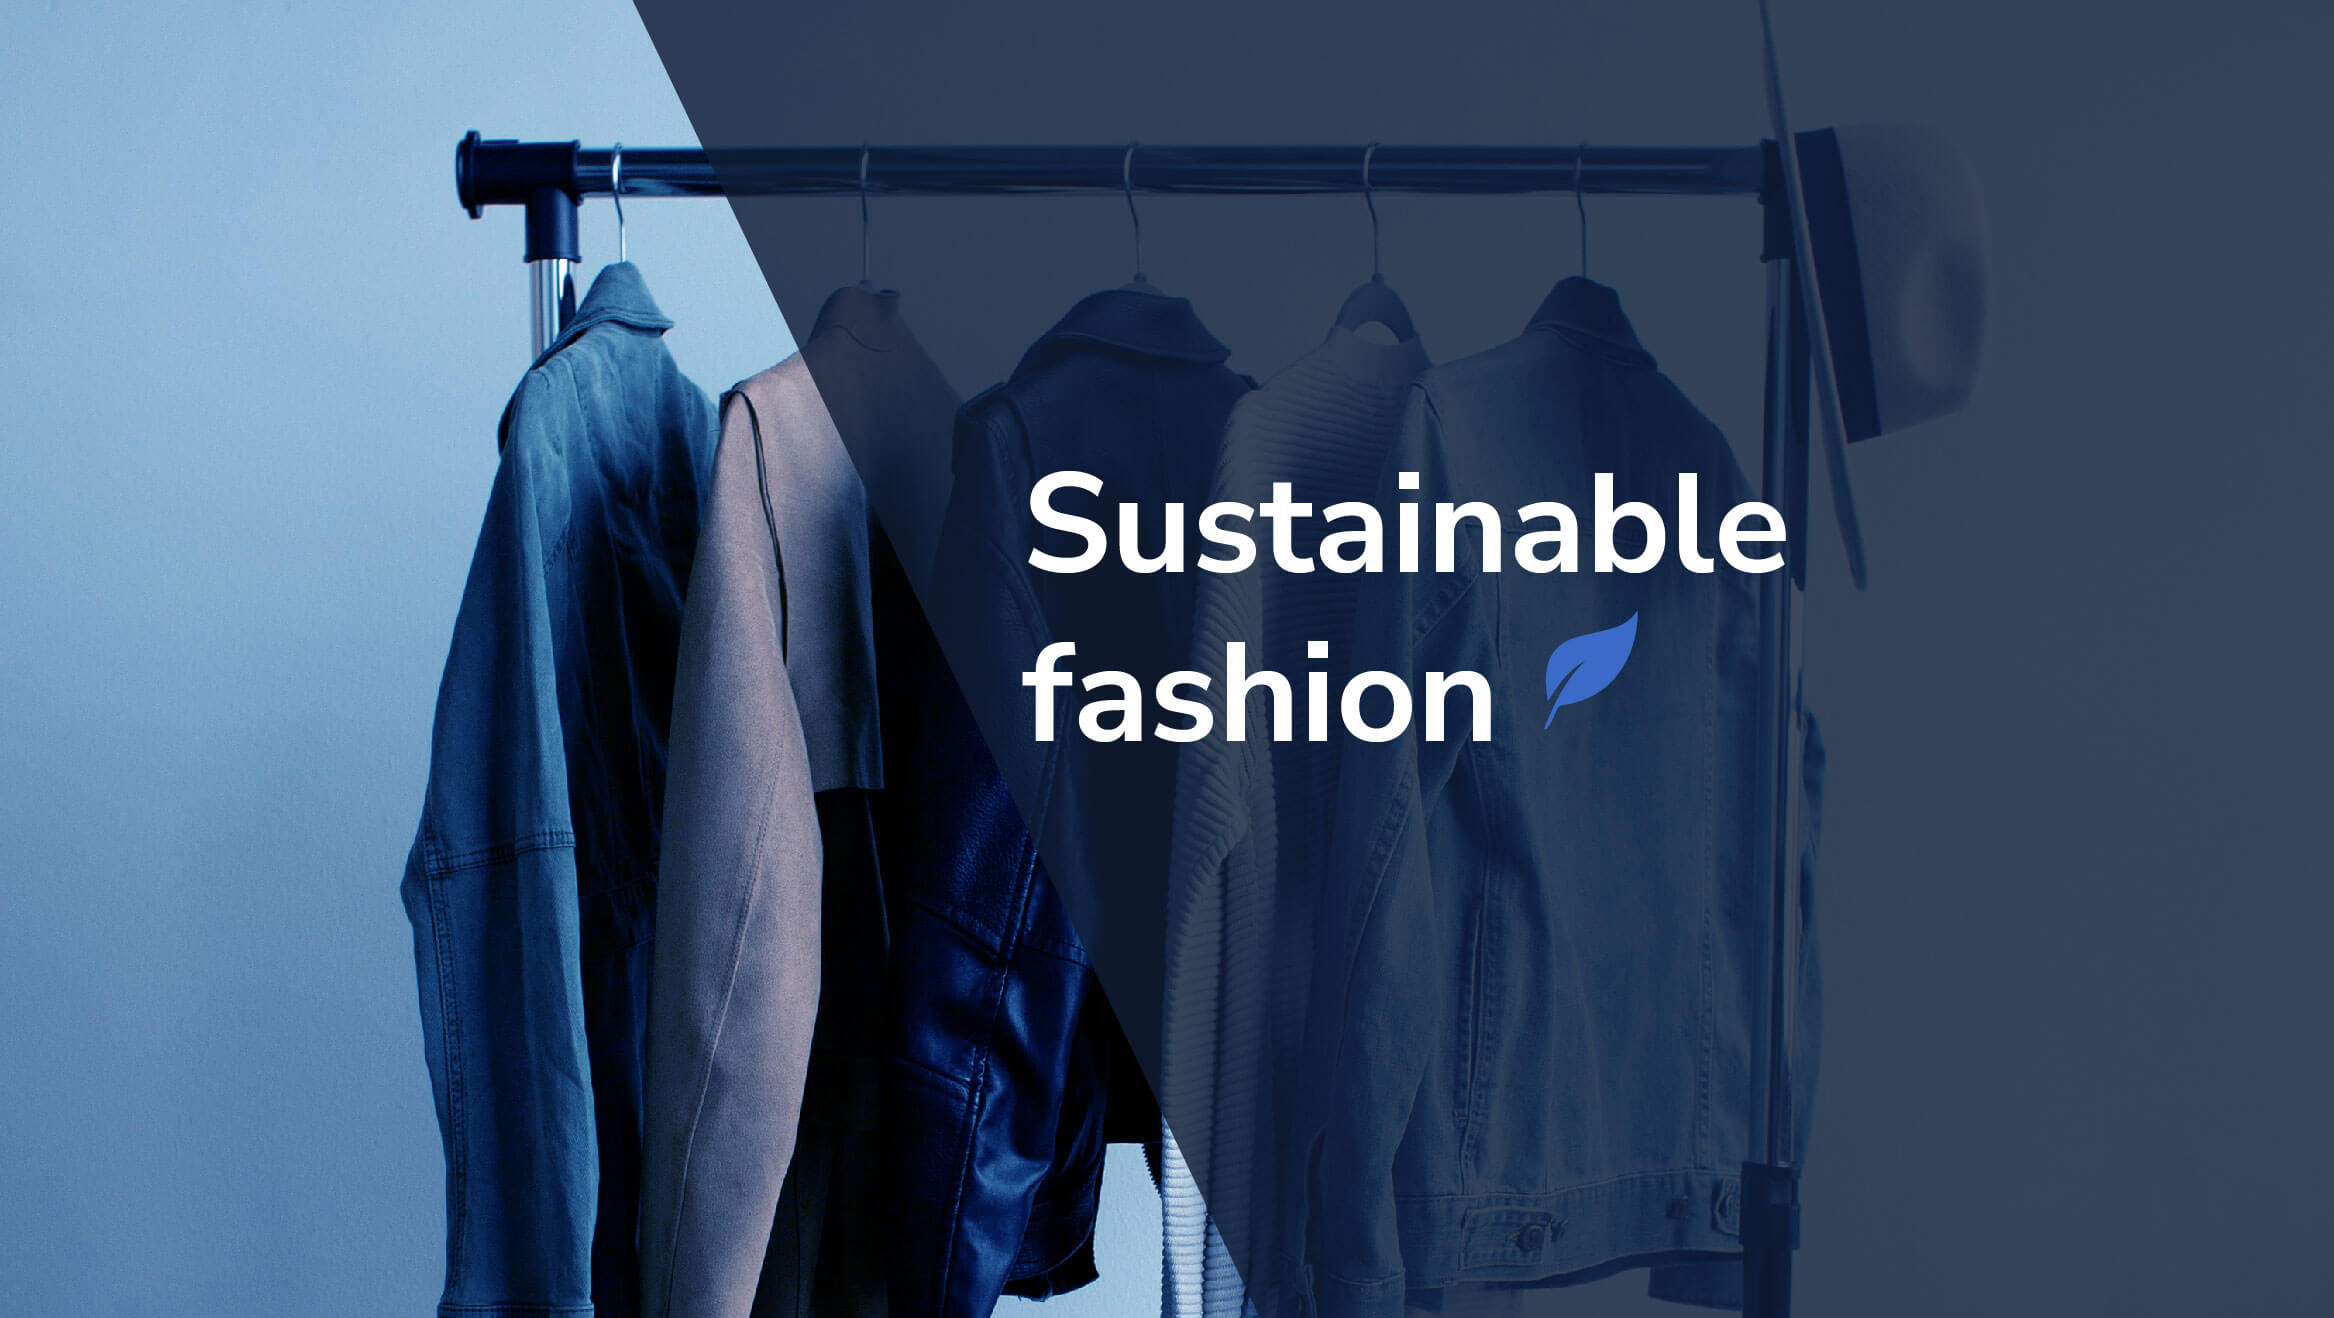 sustainability fashion essay